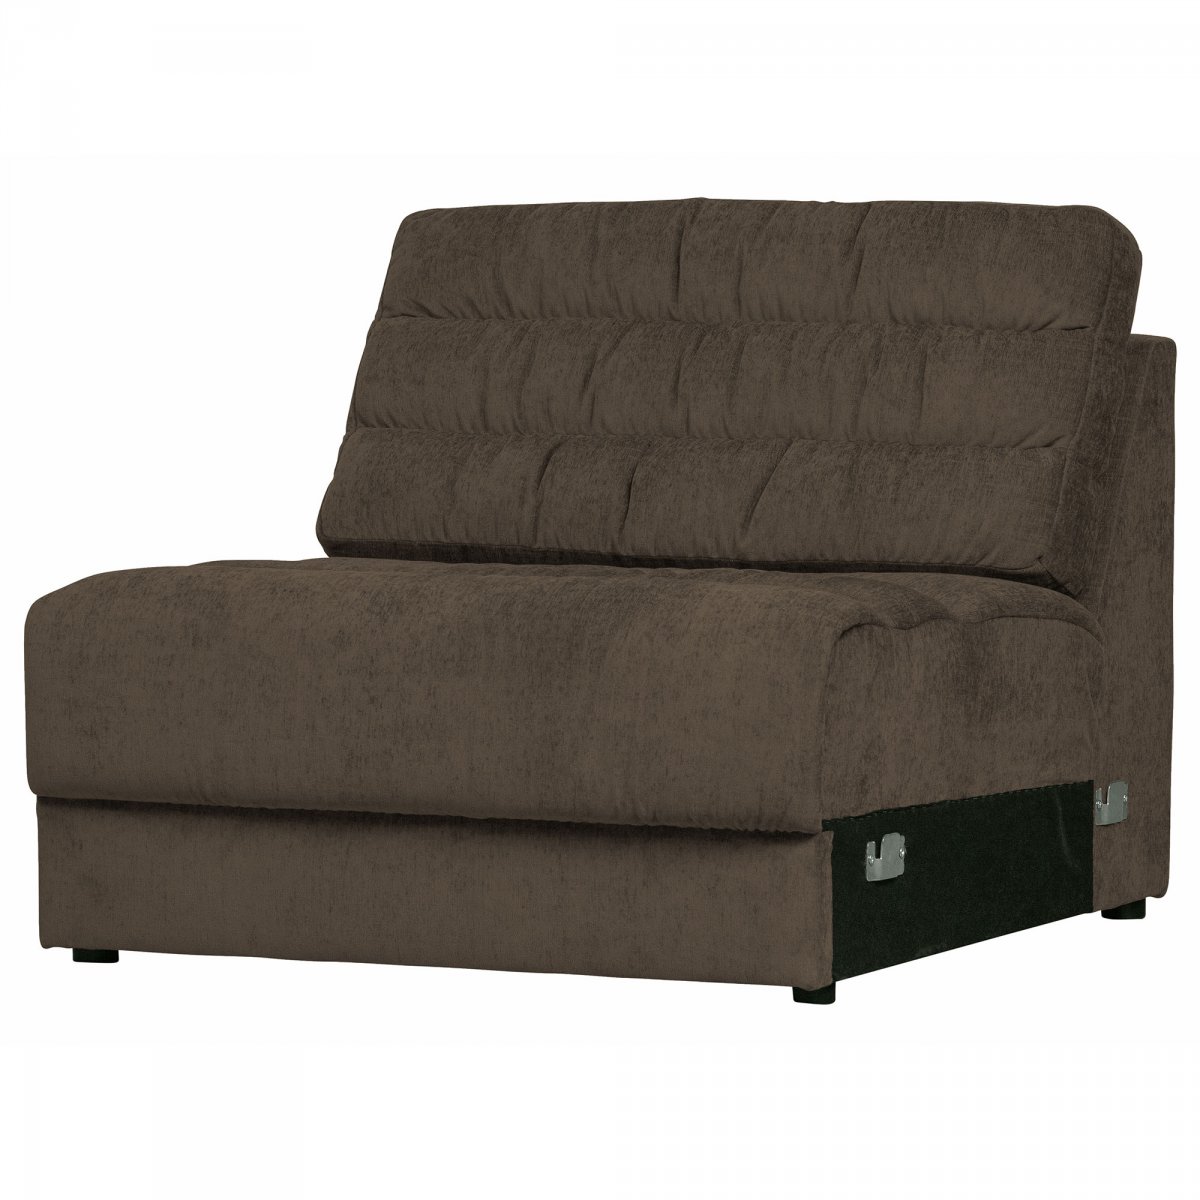 Canapé modulable section fauteuil en tissu marron